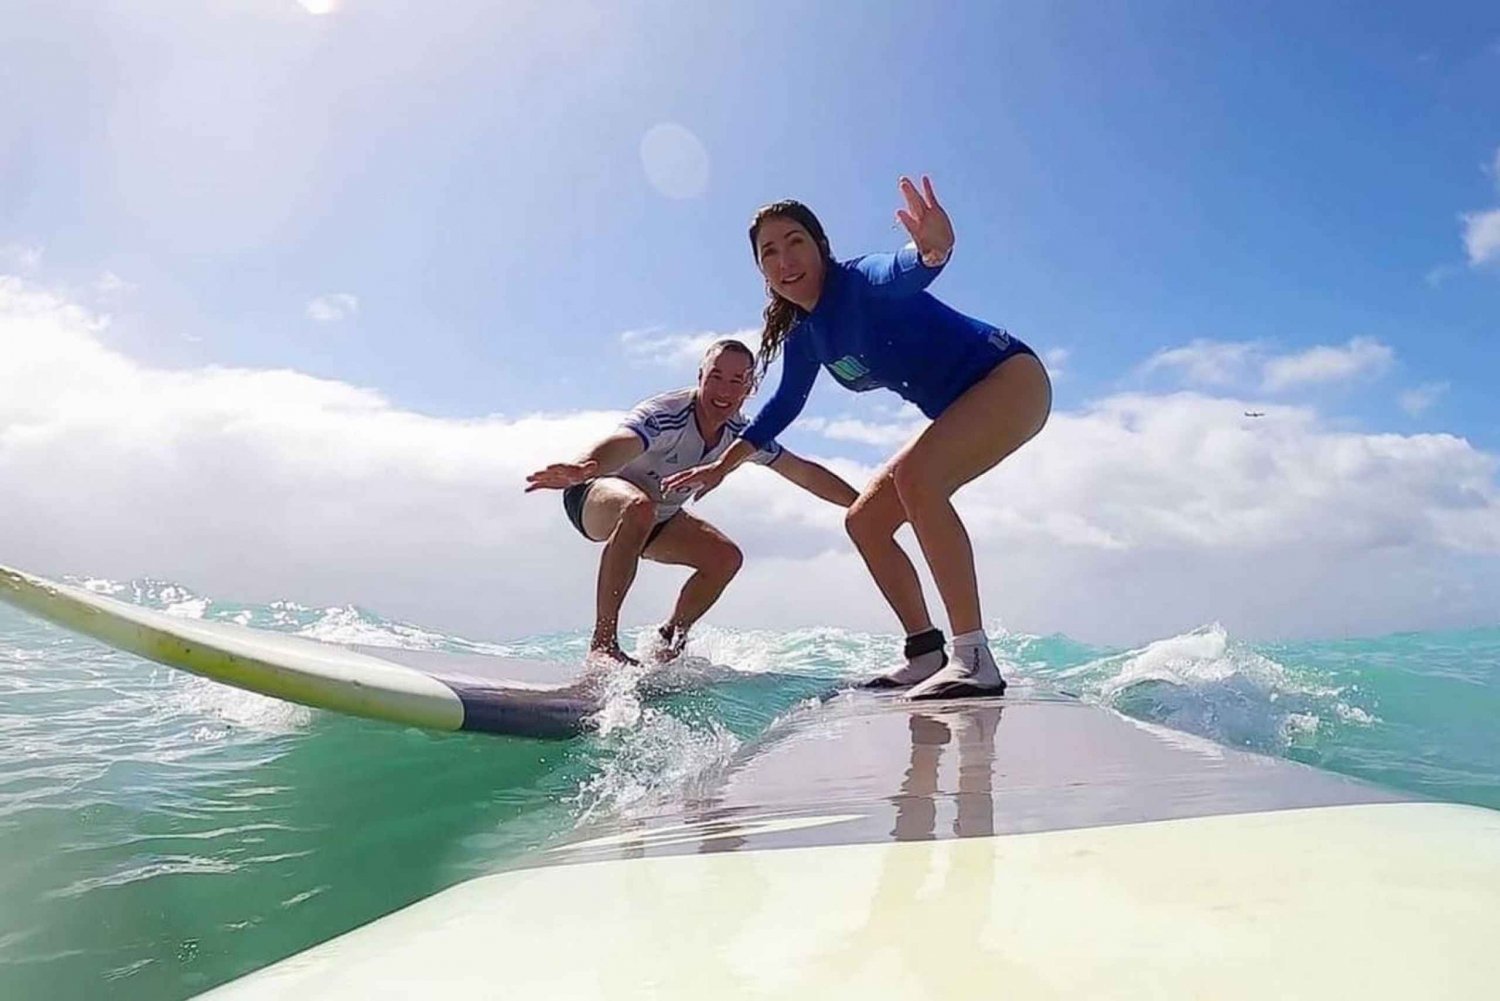 Surfekurs: Mestre den perfekte bølgen -> Nybegynnere og viderekomne